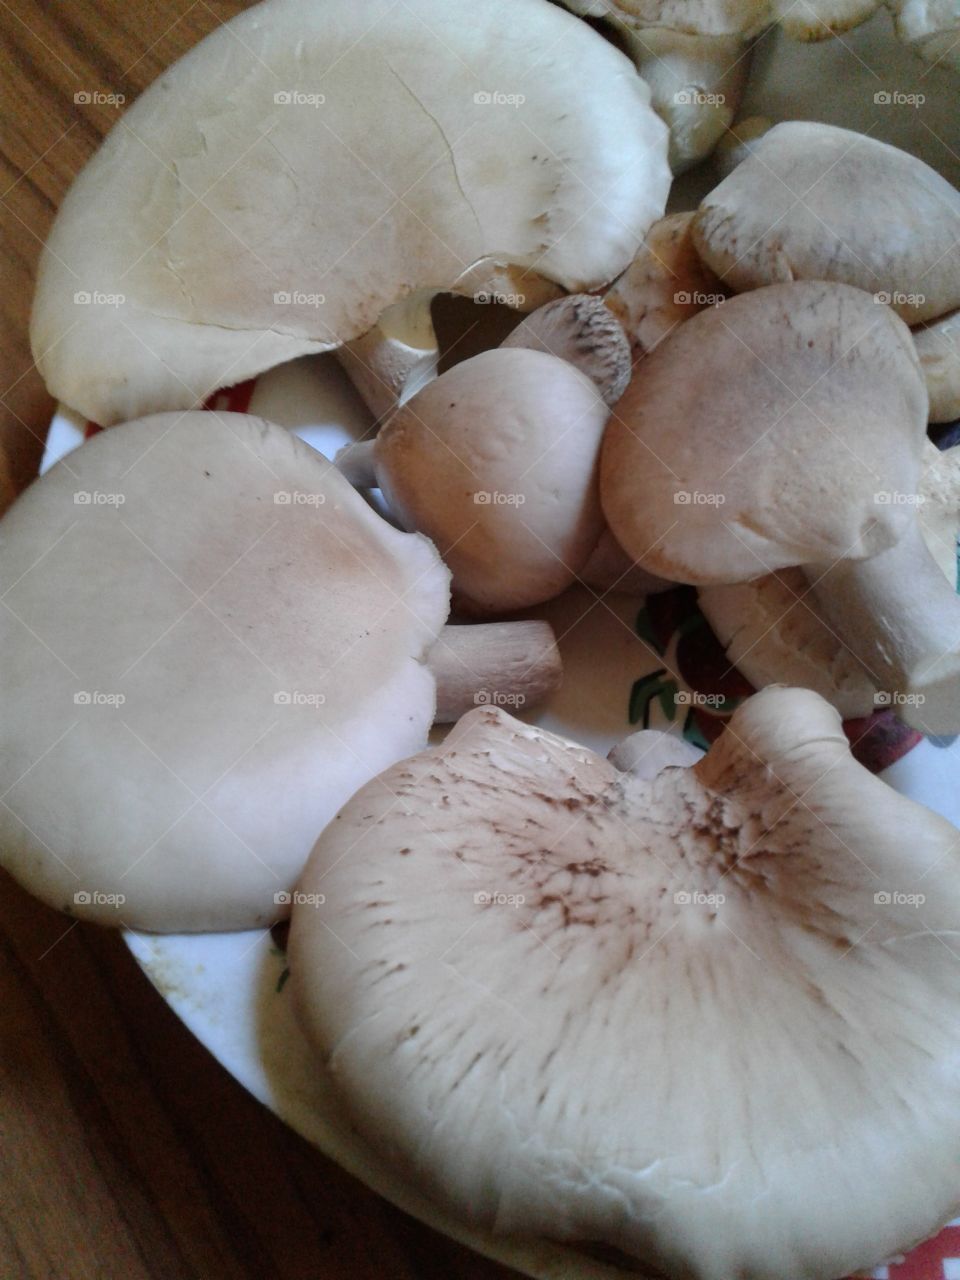 mushroom _ Abalone